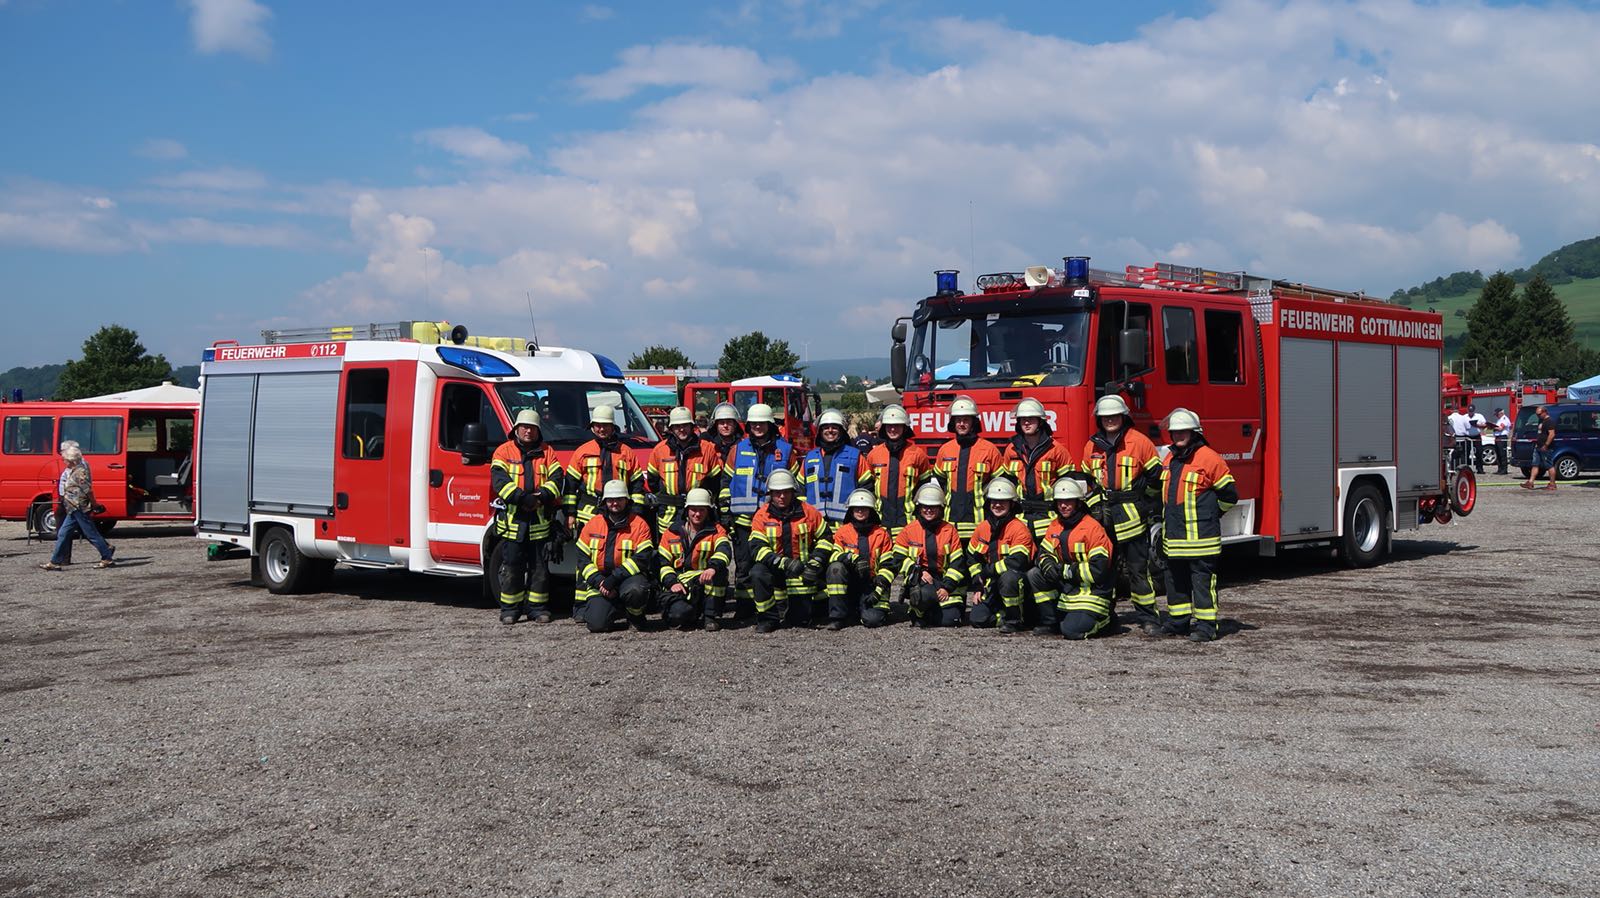 Freiwillige Feuerwehr Gottmadingen: Feuerwehr Gottmadingen 4-fach ...